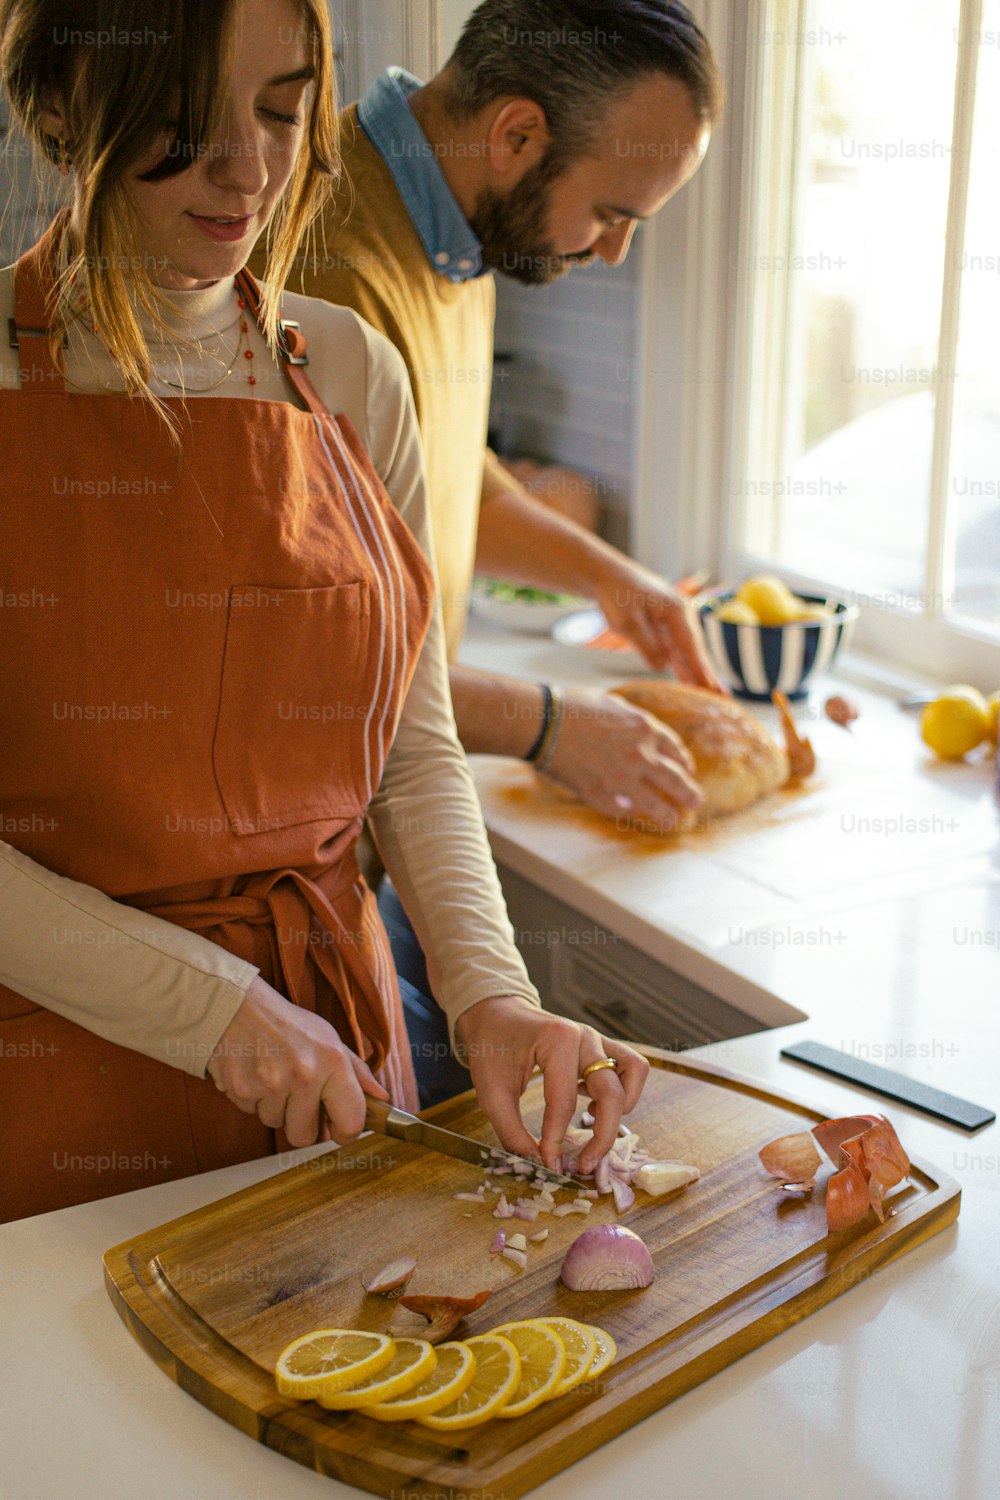 Un hombre y una mujer están preparando comida en una tabla de cortar